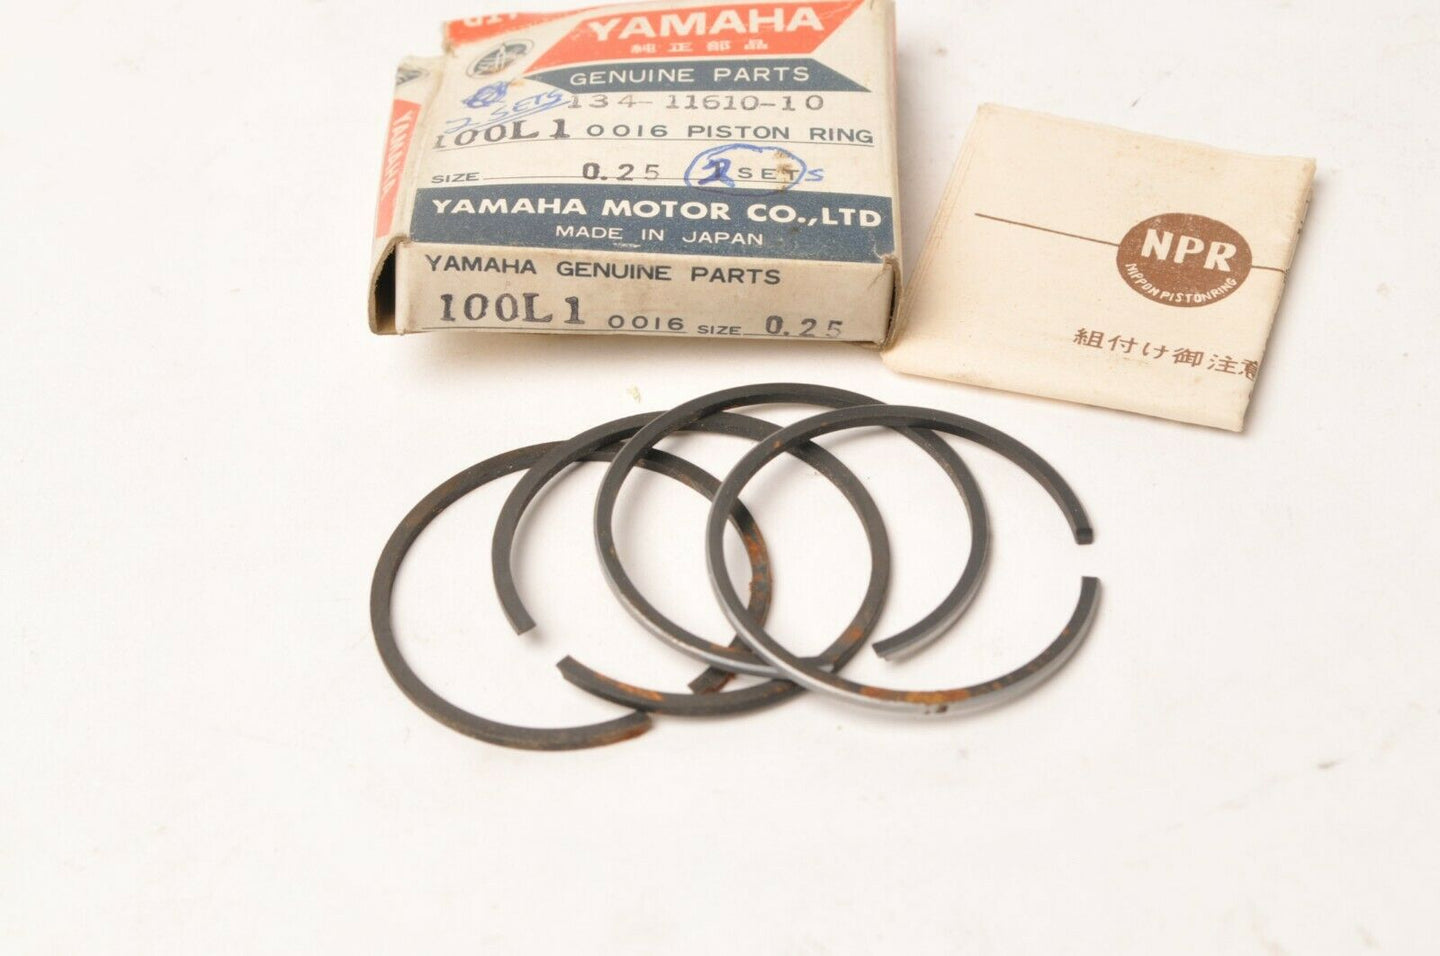 Genuine Yamaha 134-11610-10-00 YL1 Piston Ring Set - 0.25 O/S - 2 sets,corrosion